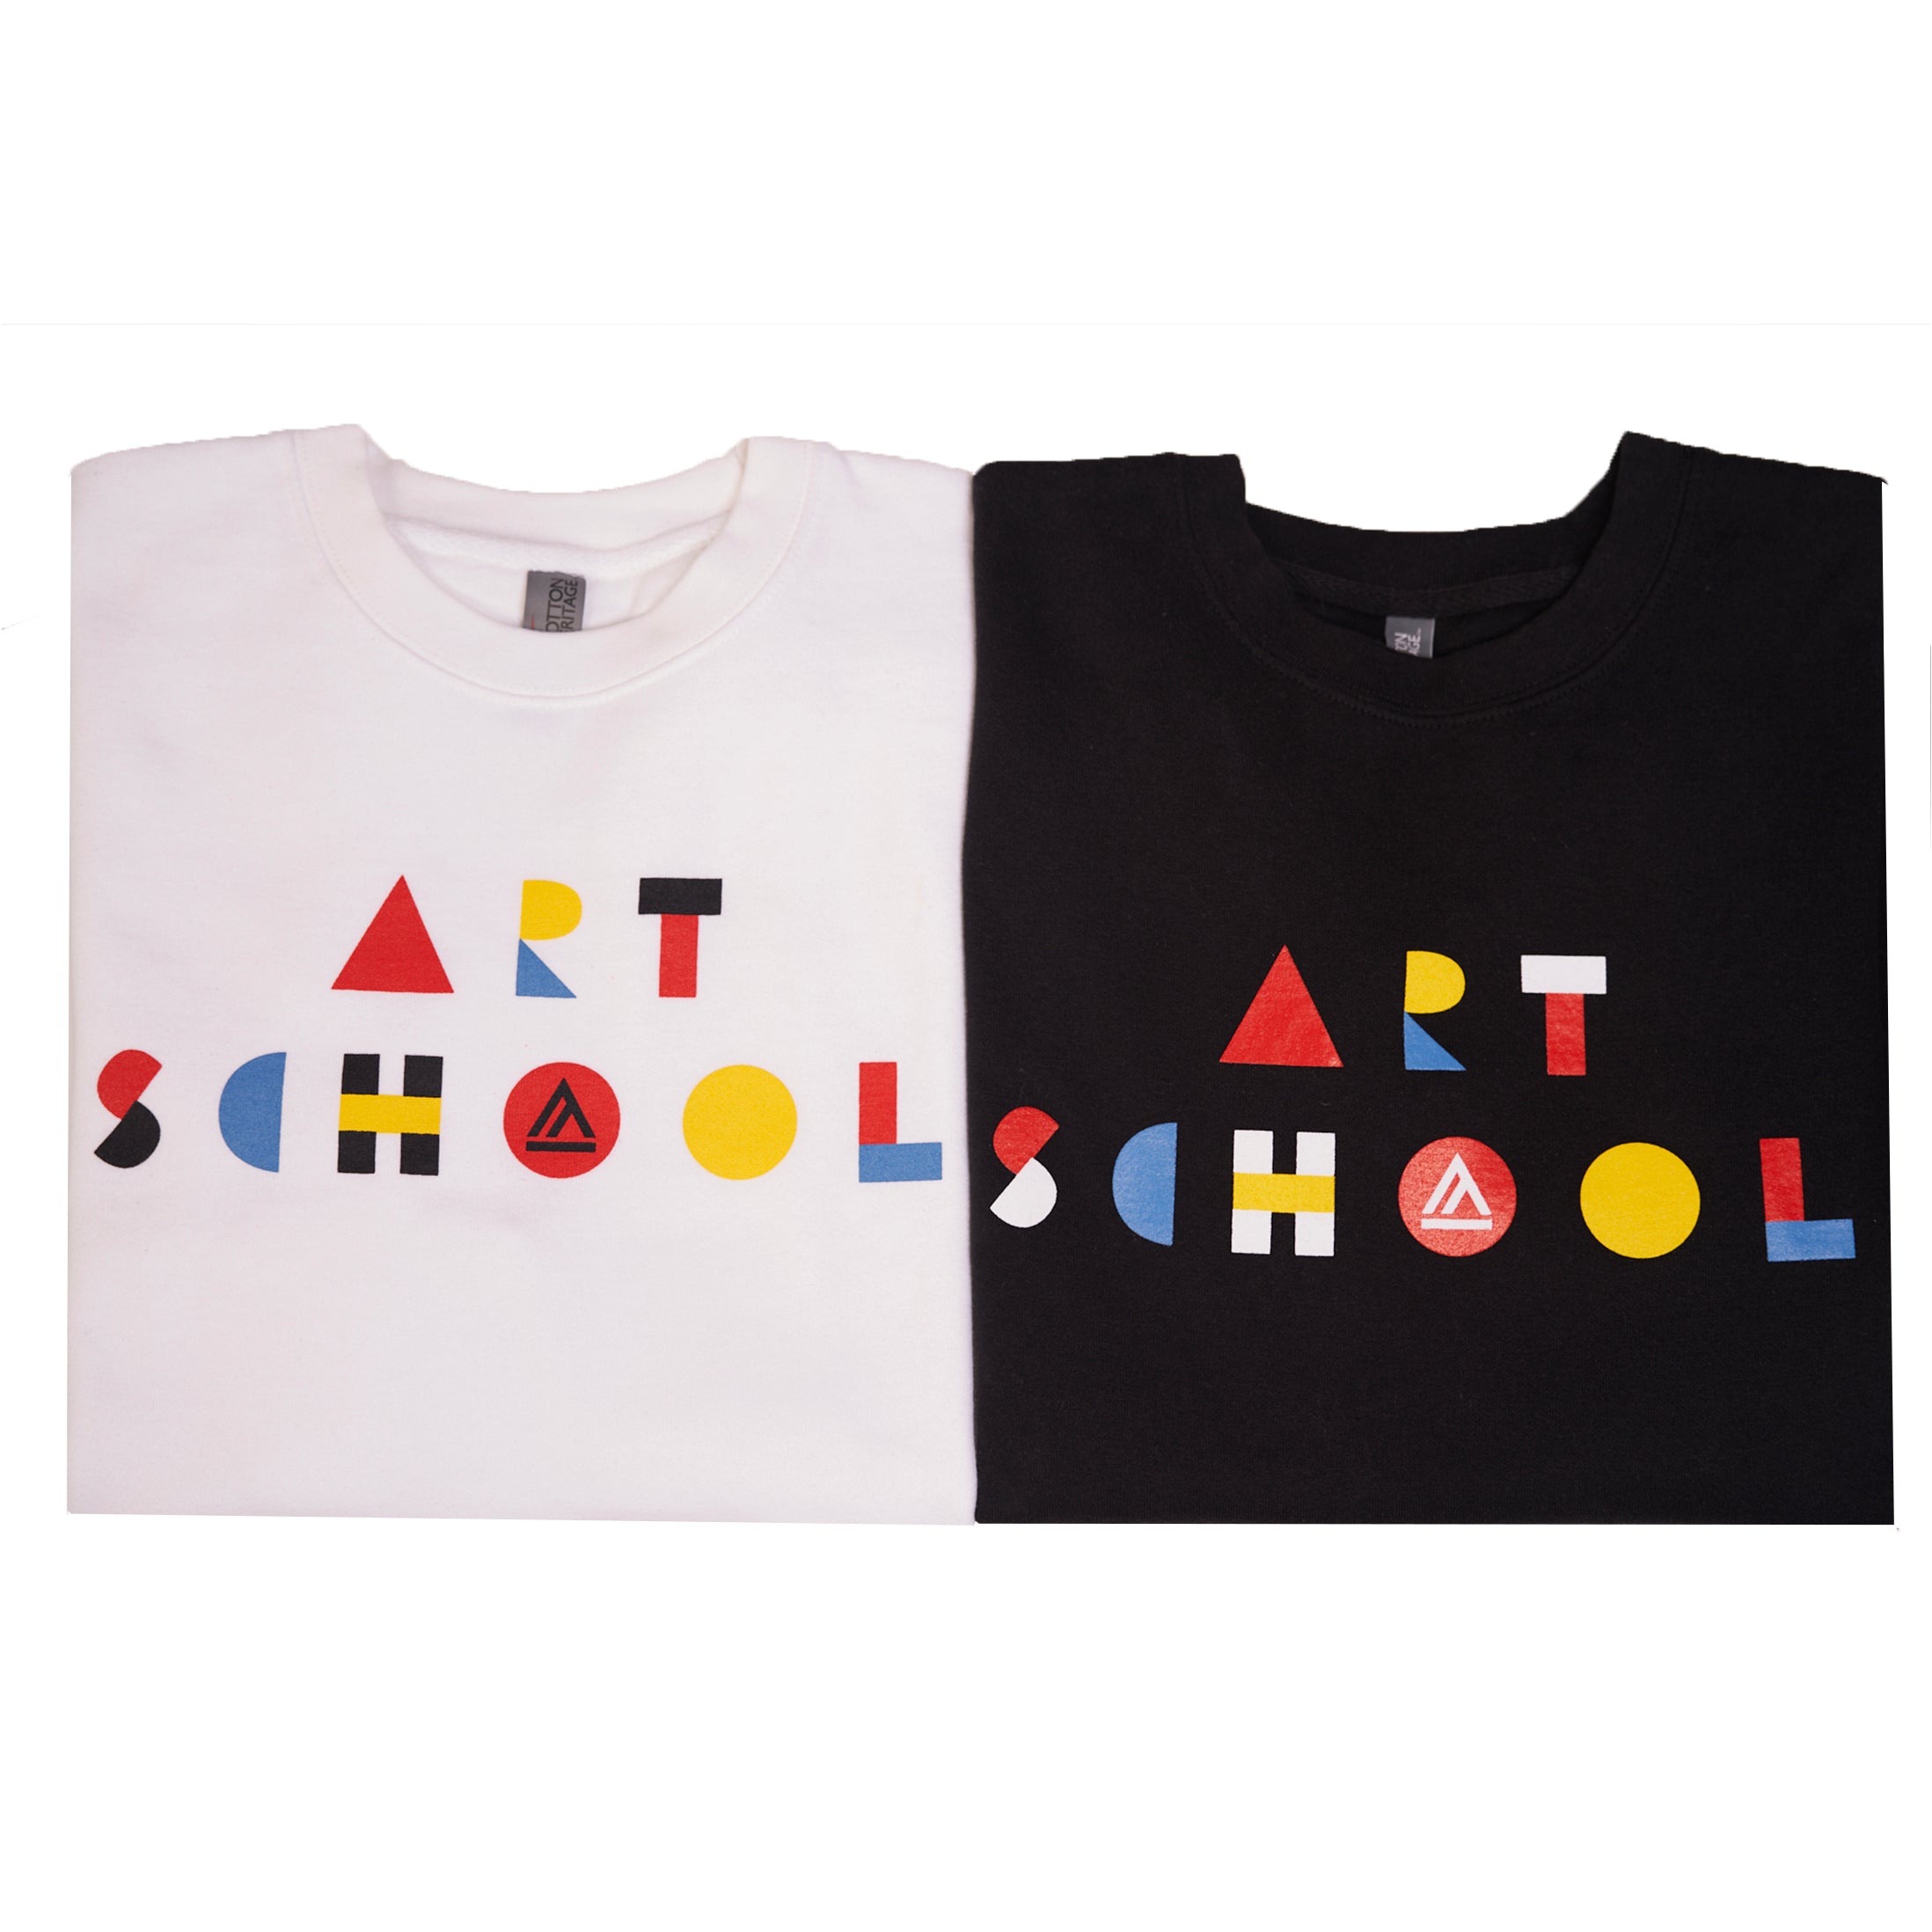 Crewneck Sweatshirt "Art School"